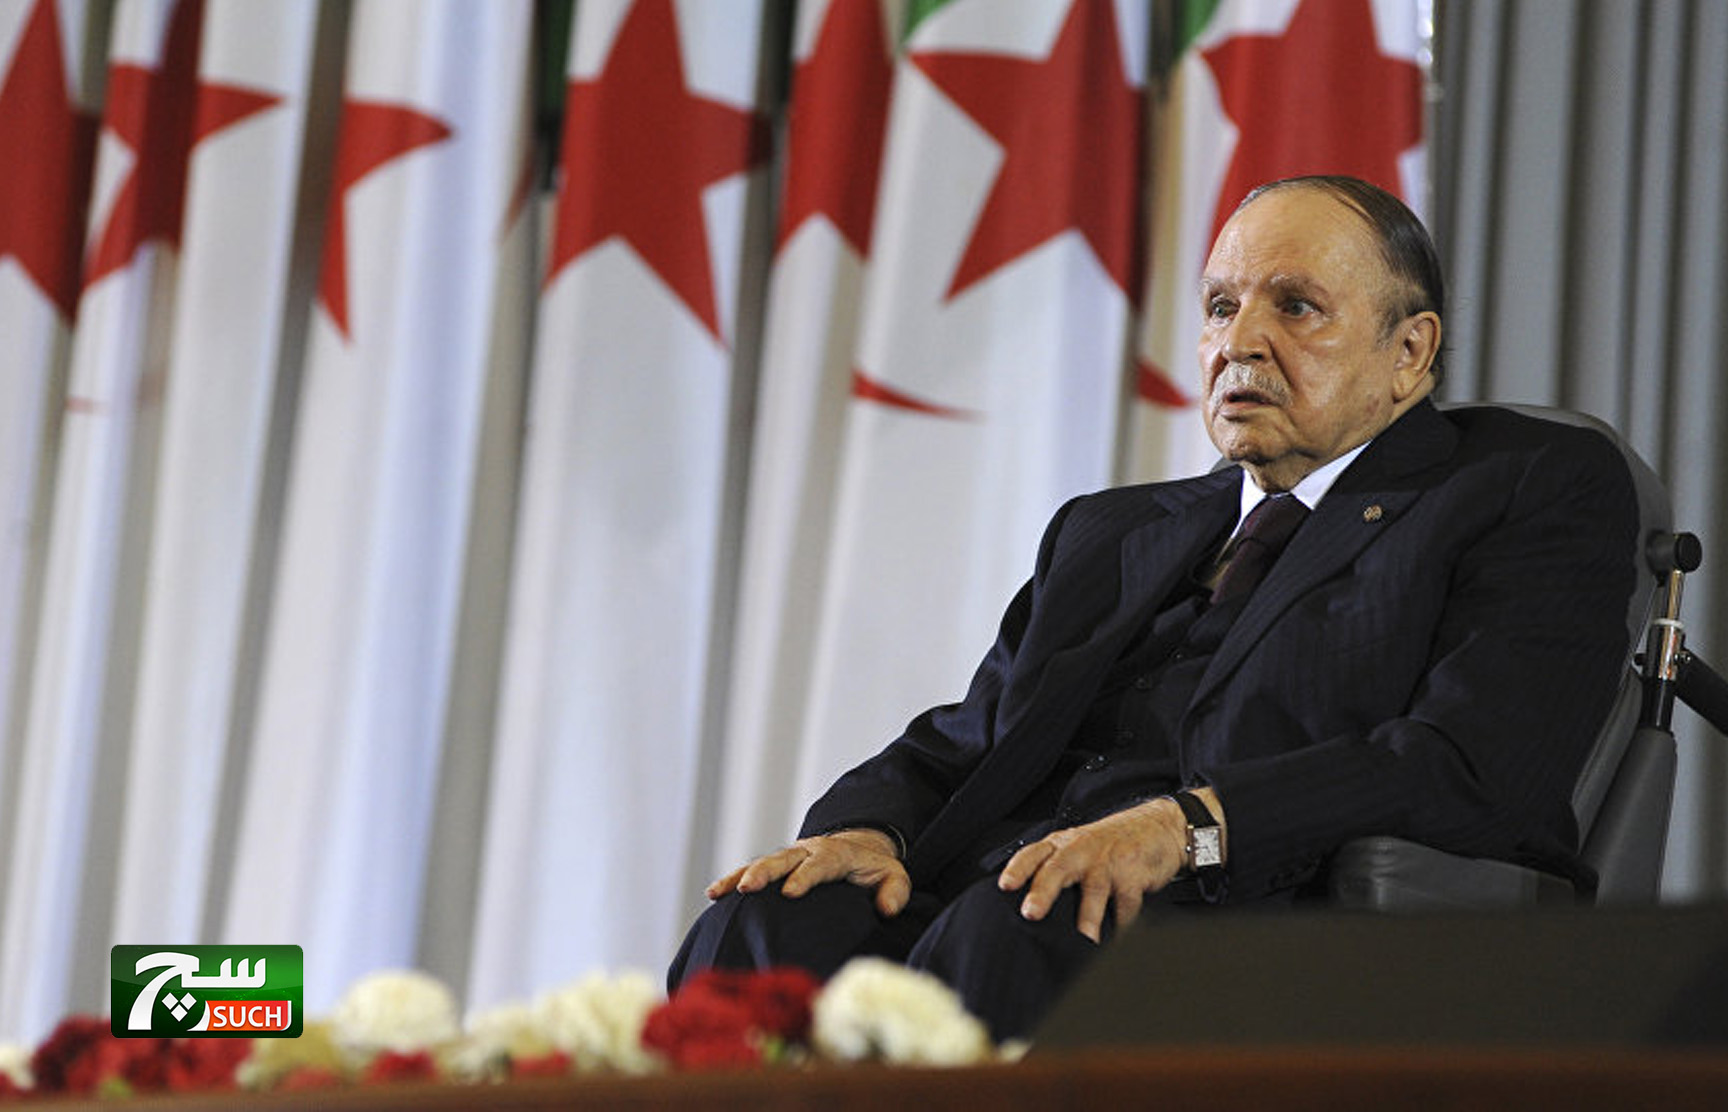 بالفيديو… لحظة تقديم الرئيس الجزائري عبد العزيز بوتفليقة استقالته